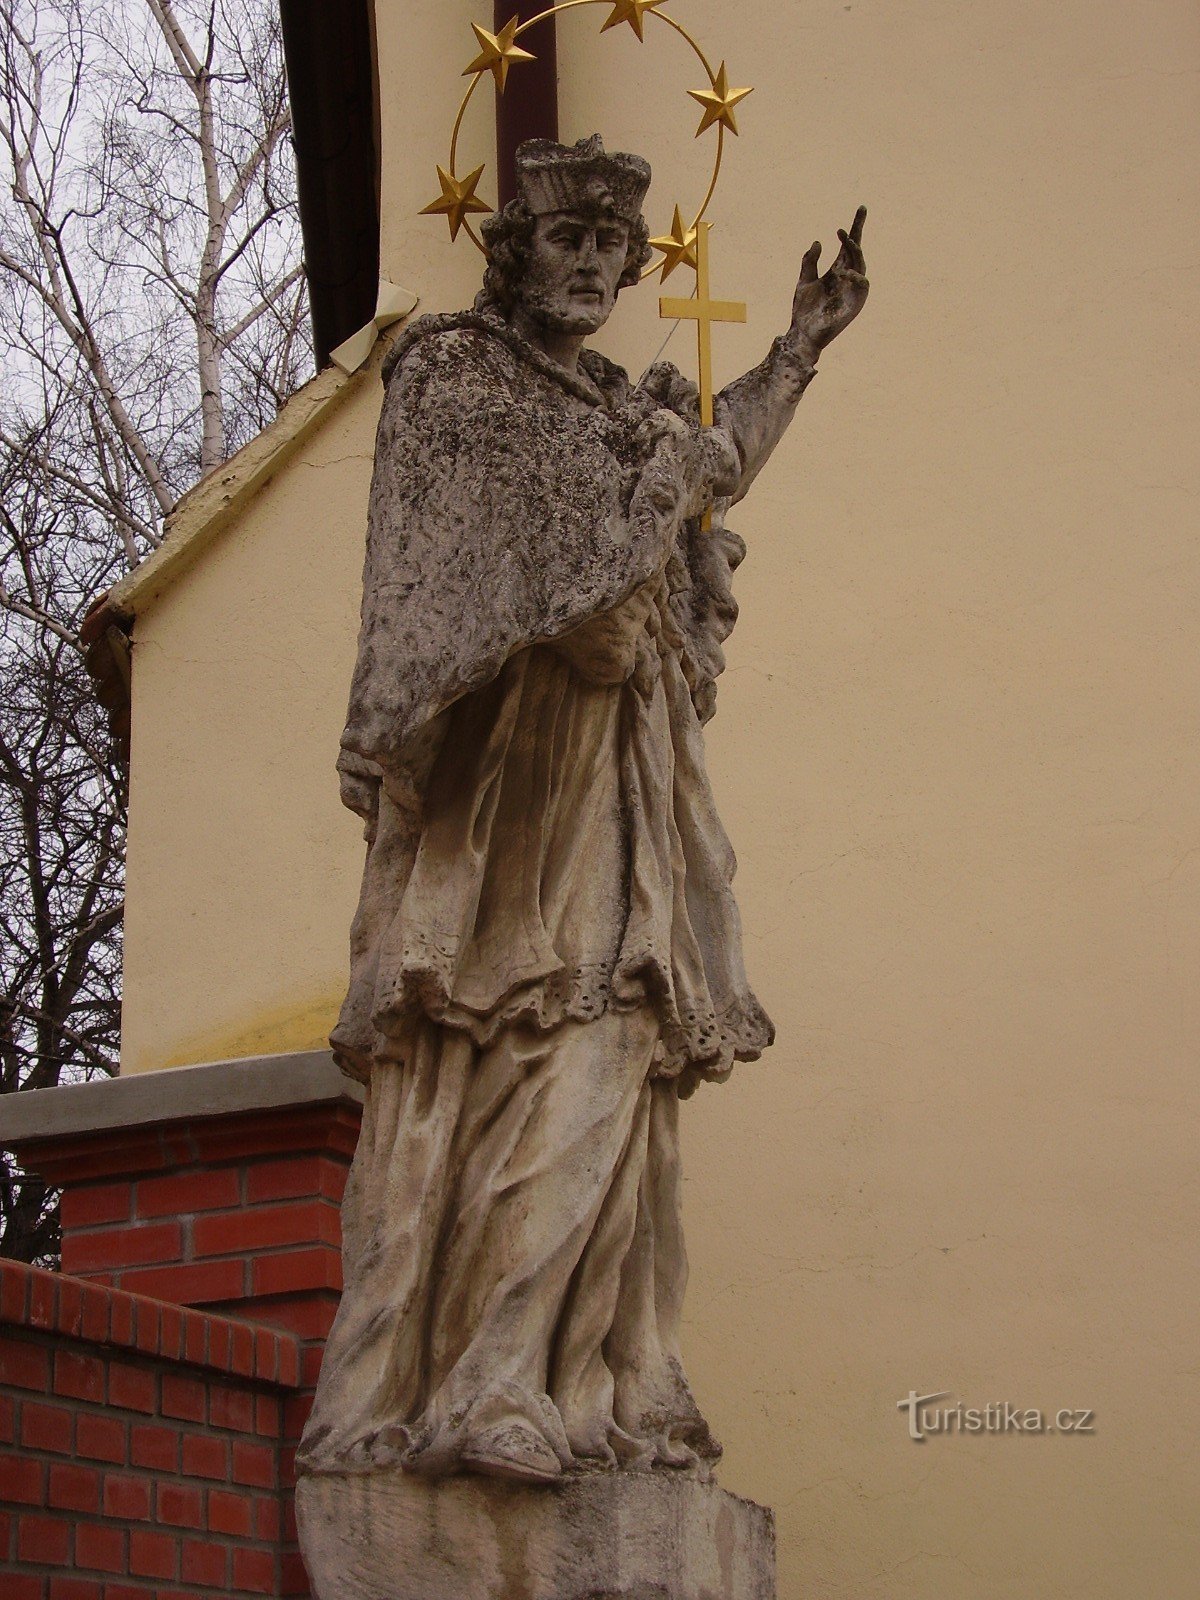 聖の像ブルノ近郊シュラパニツェのヤン・ネポムツキー